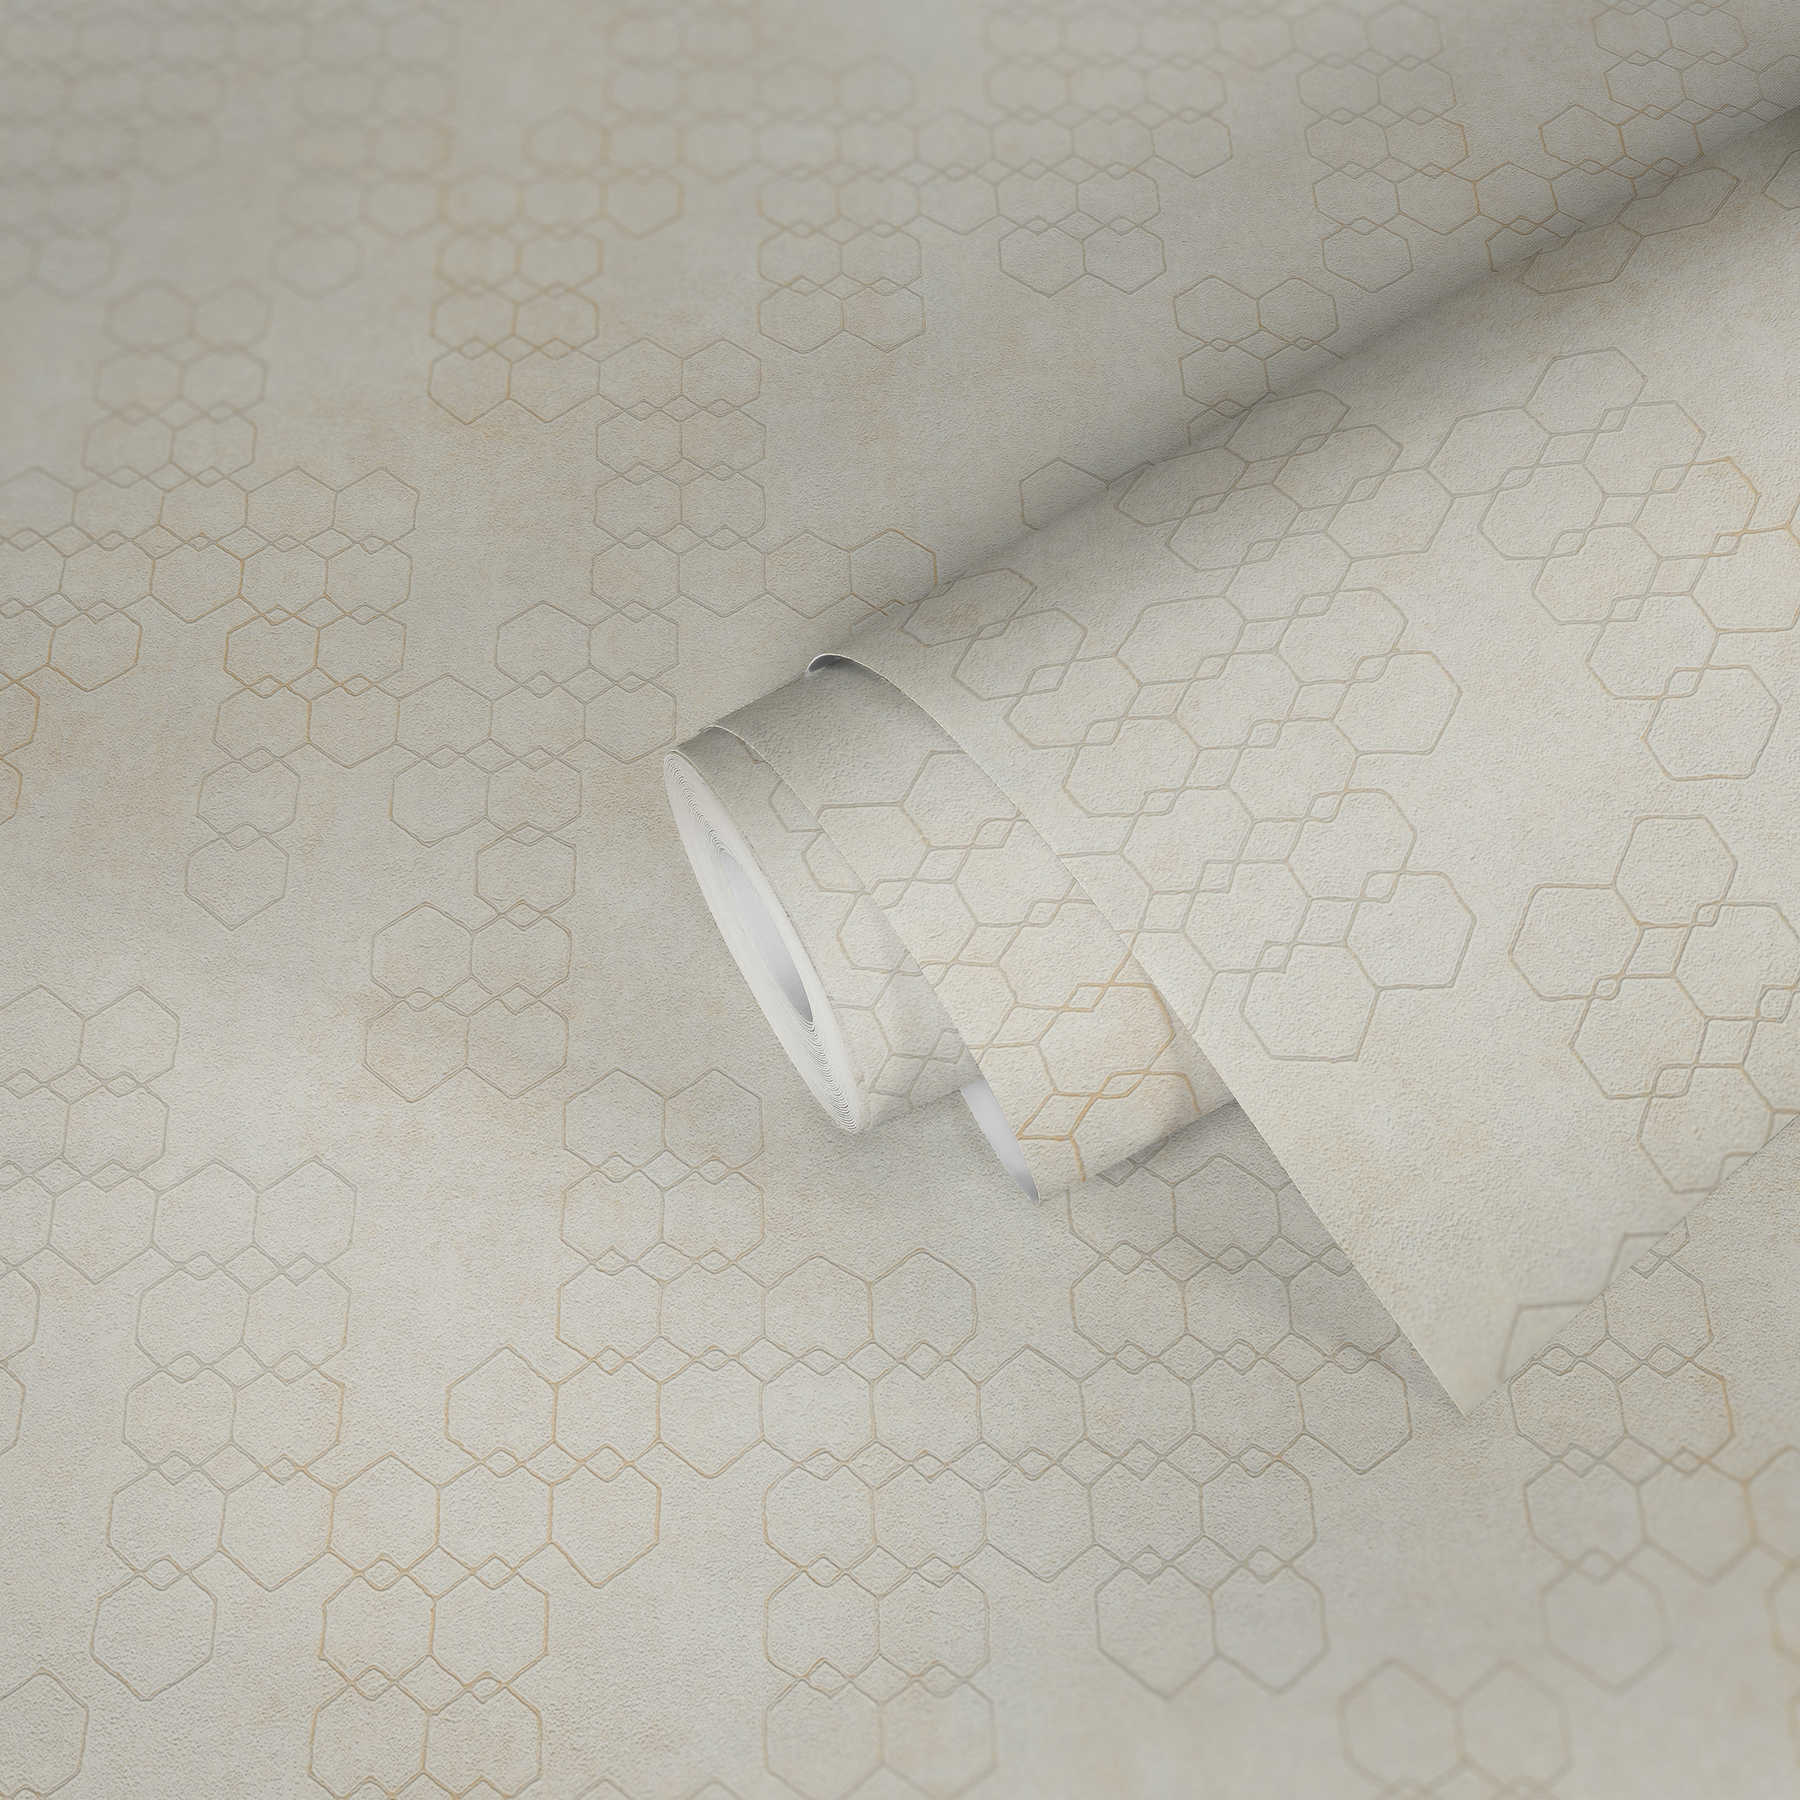             Papier peint à motifs géométriques de style industriel - crème, gris, blanc
        